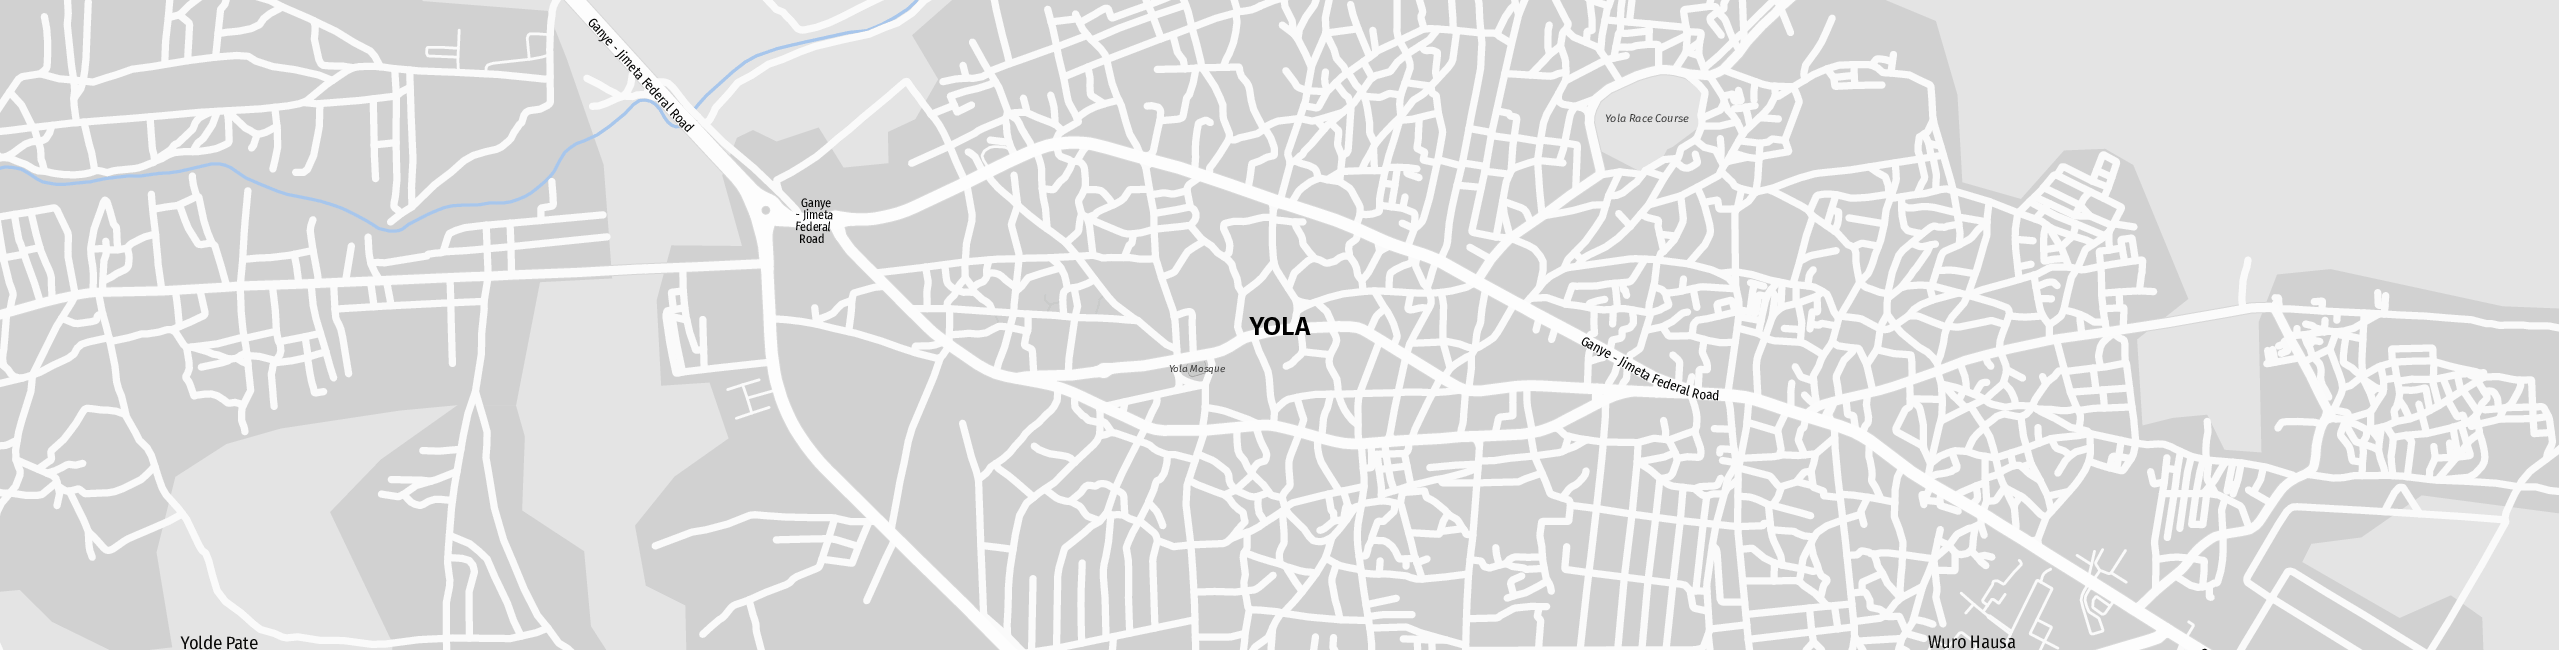 Stadtplan Yola zum Downloaden.